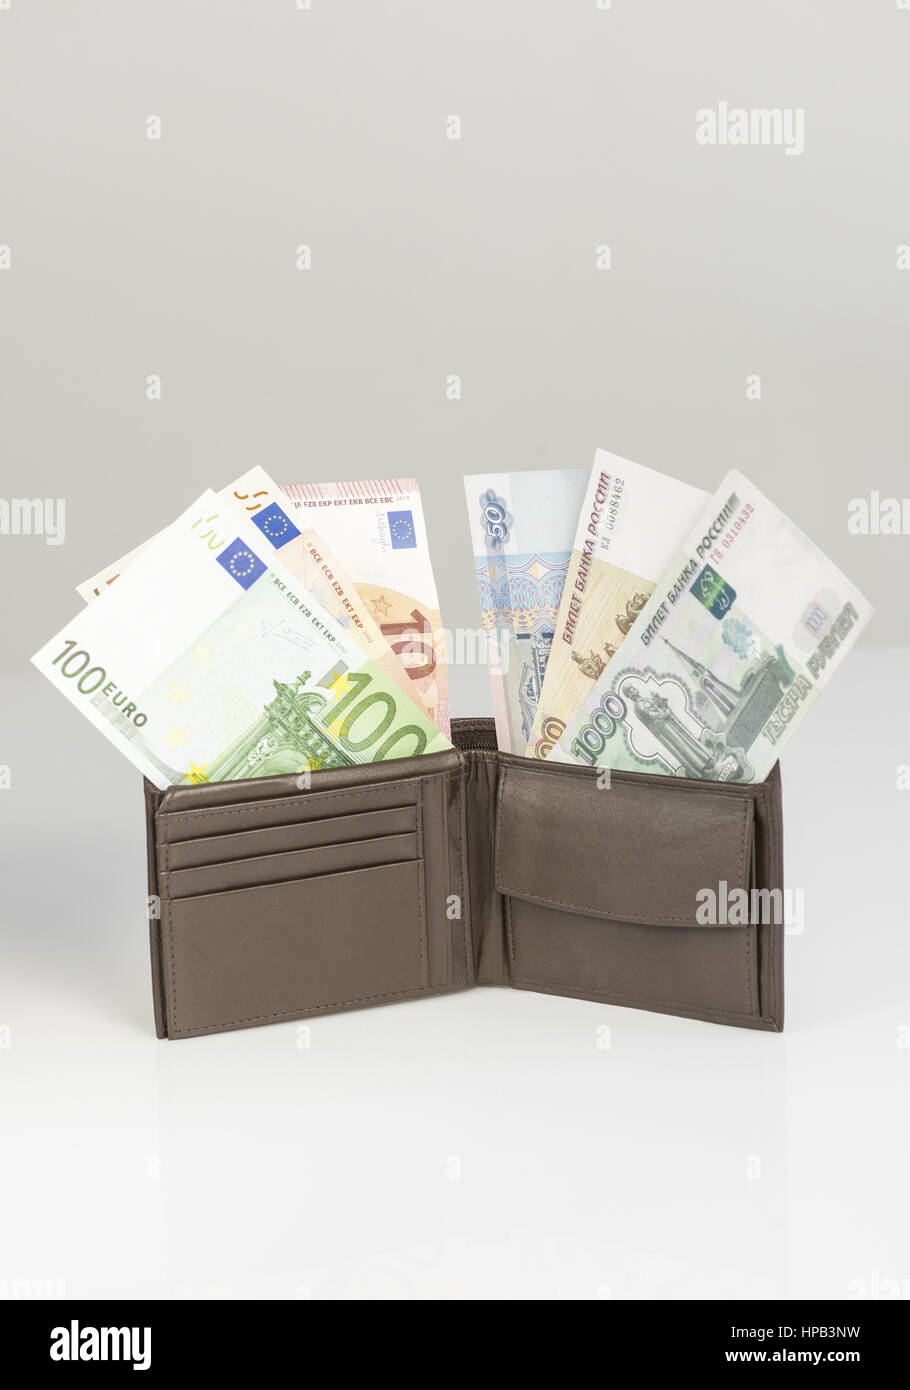 Geldboerse mit Geldscheinen, Euro, Rubel Stock Photo